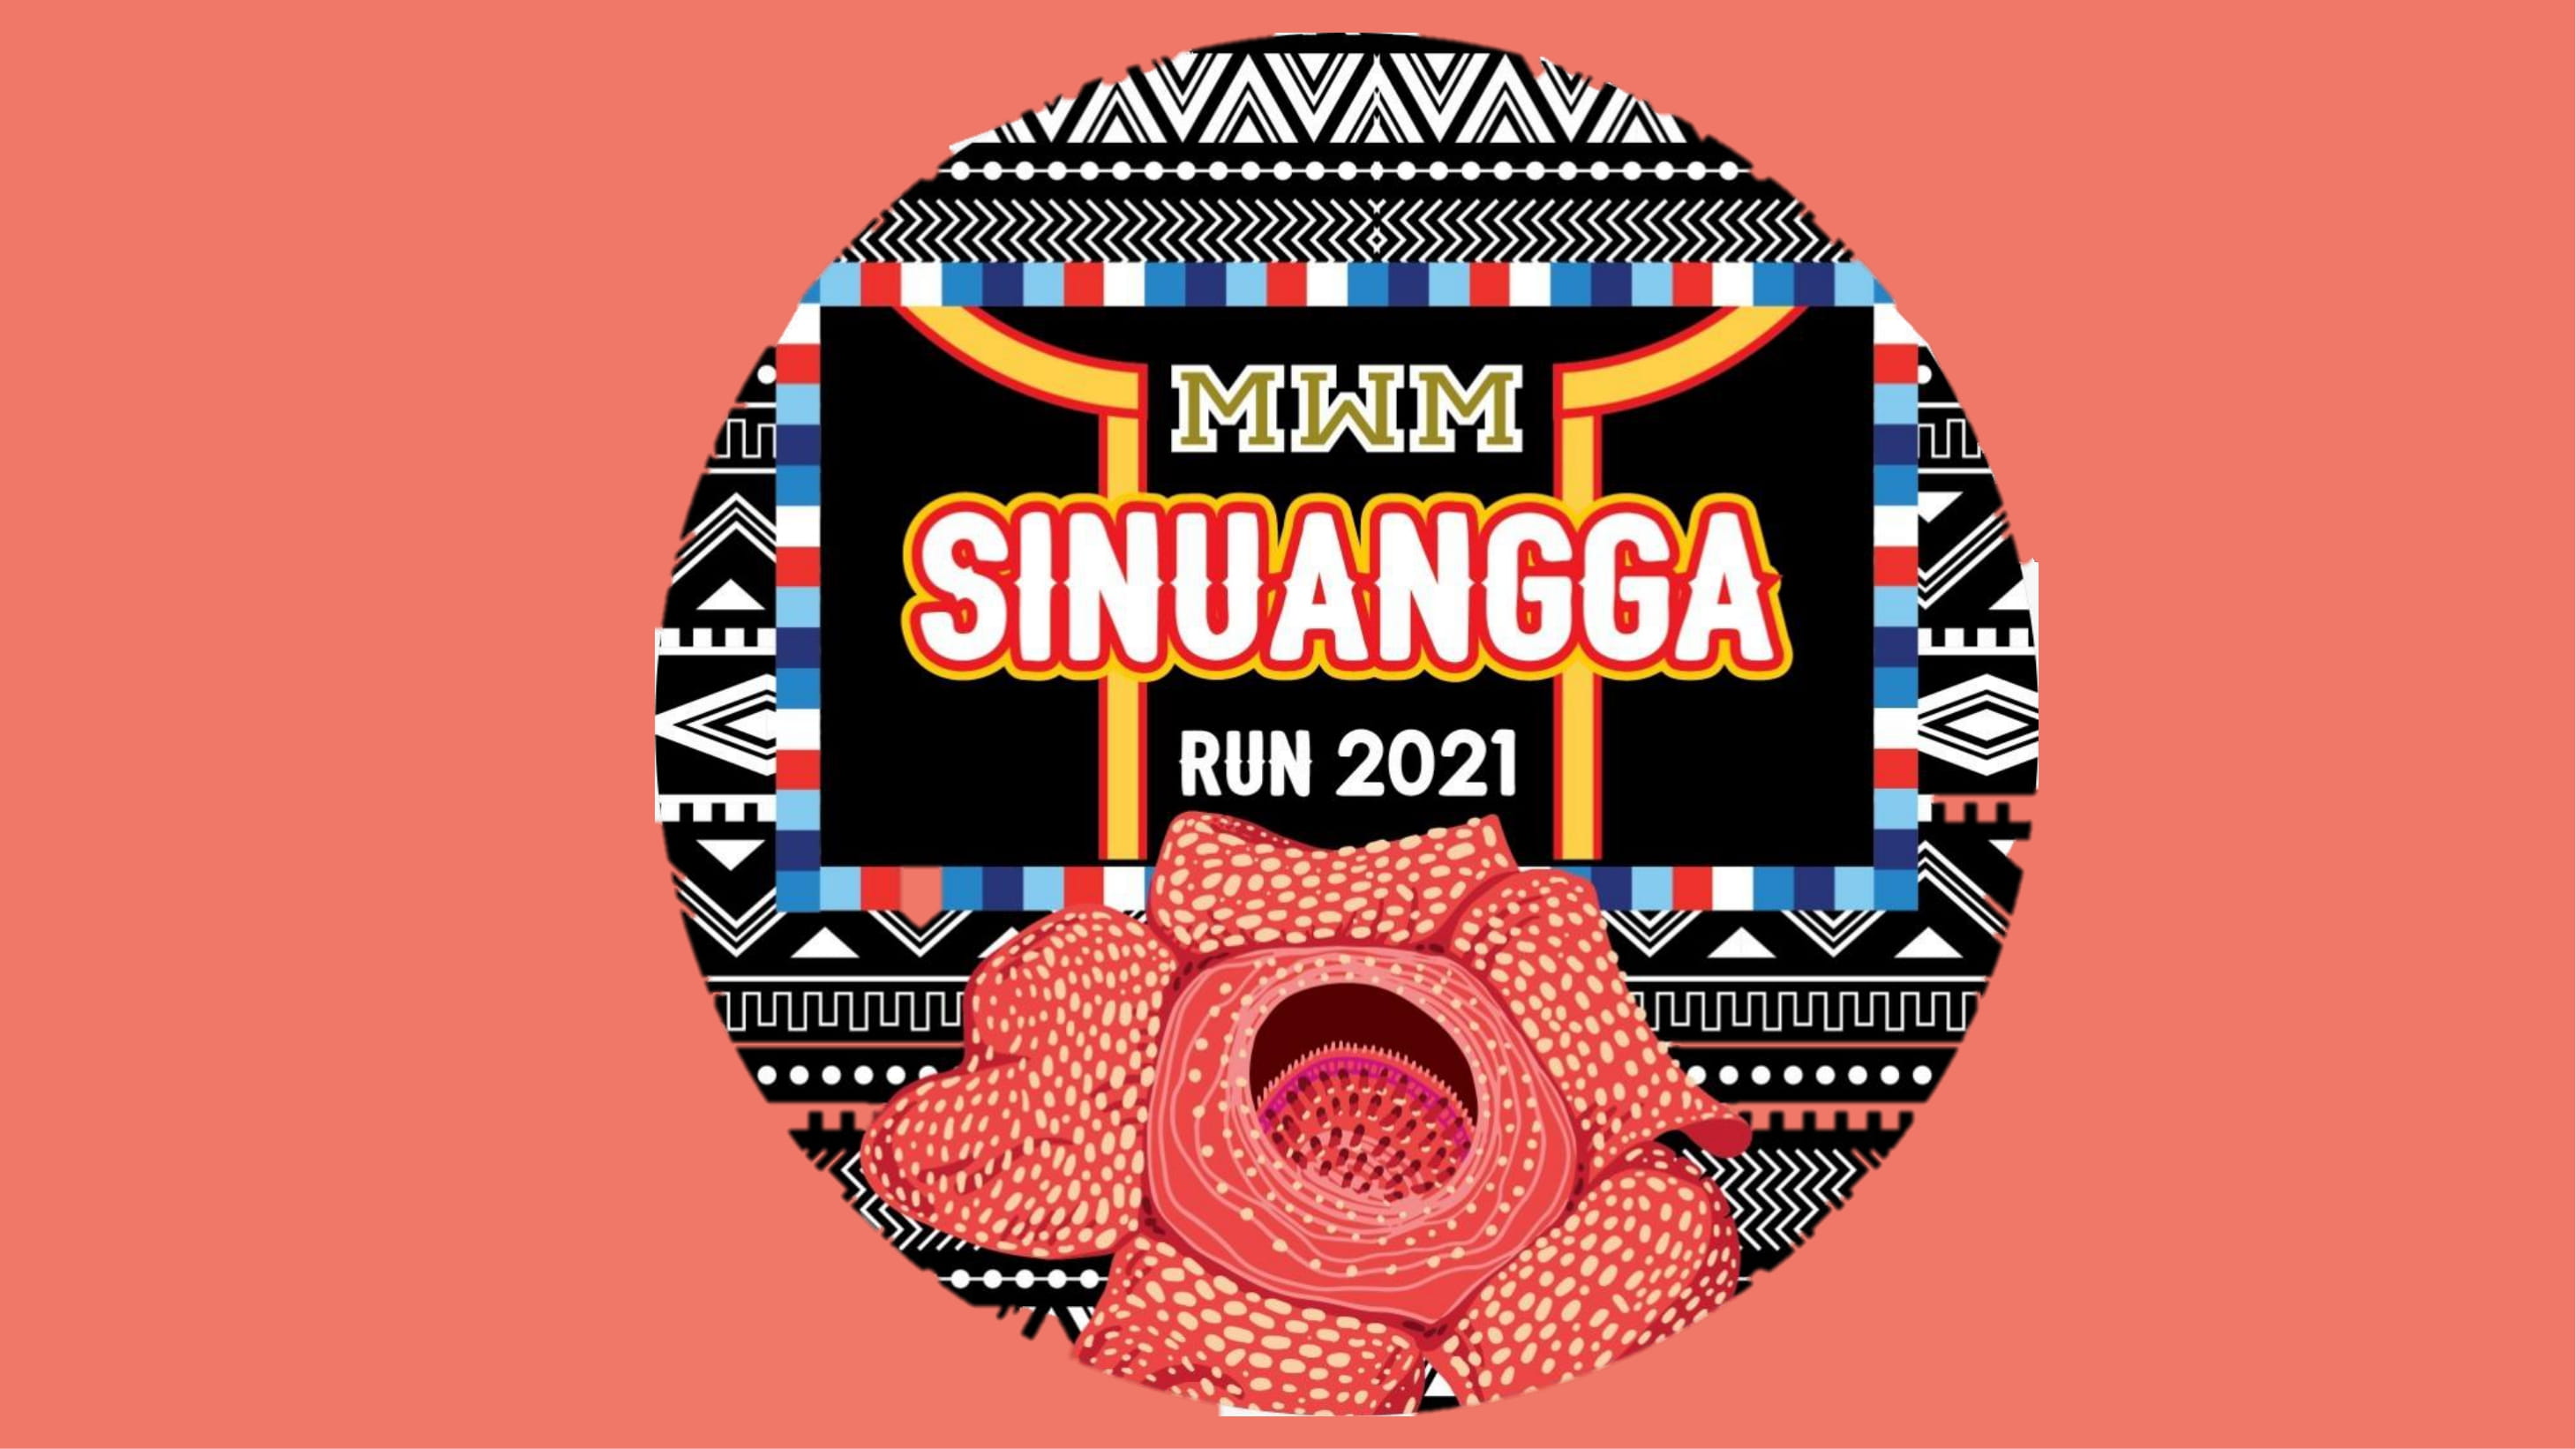 The Sinuangga Run 2021